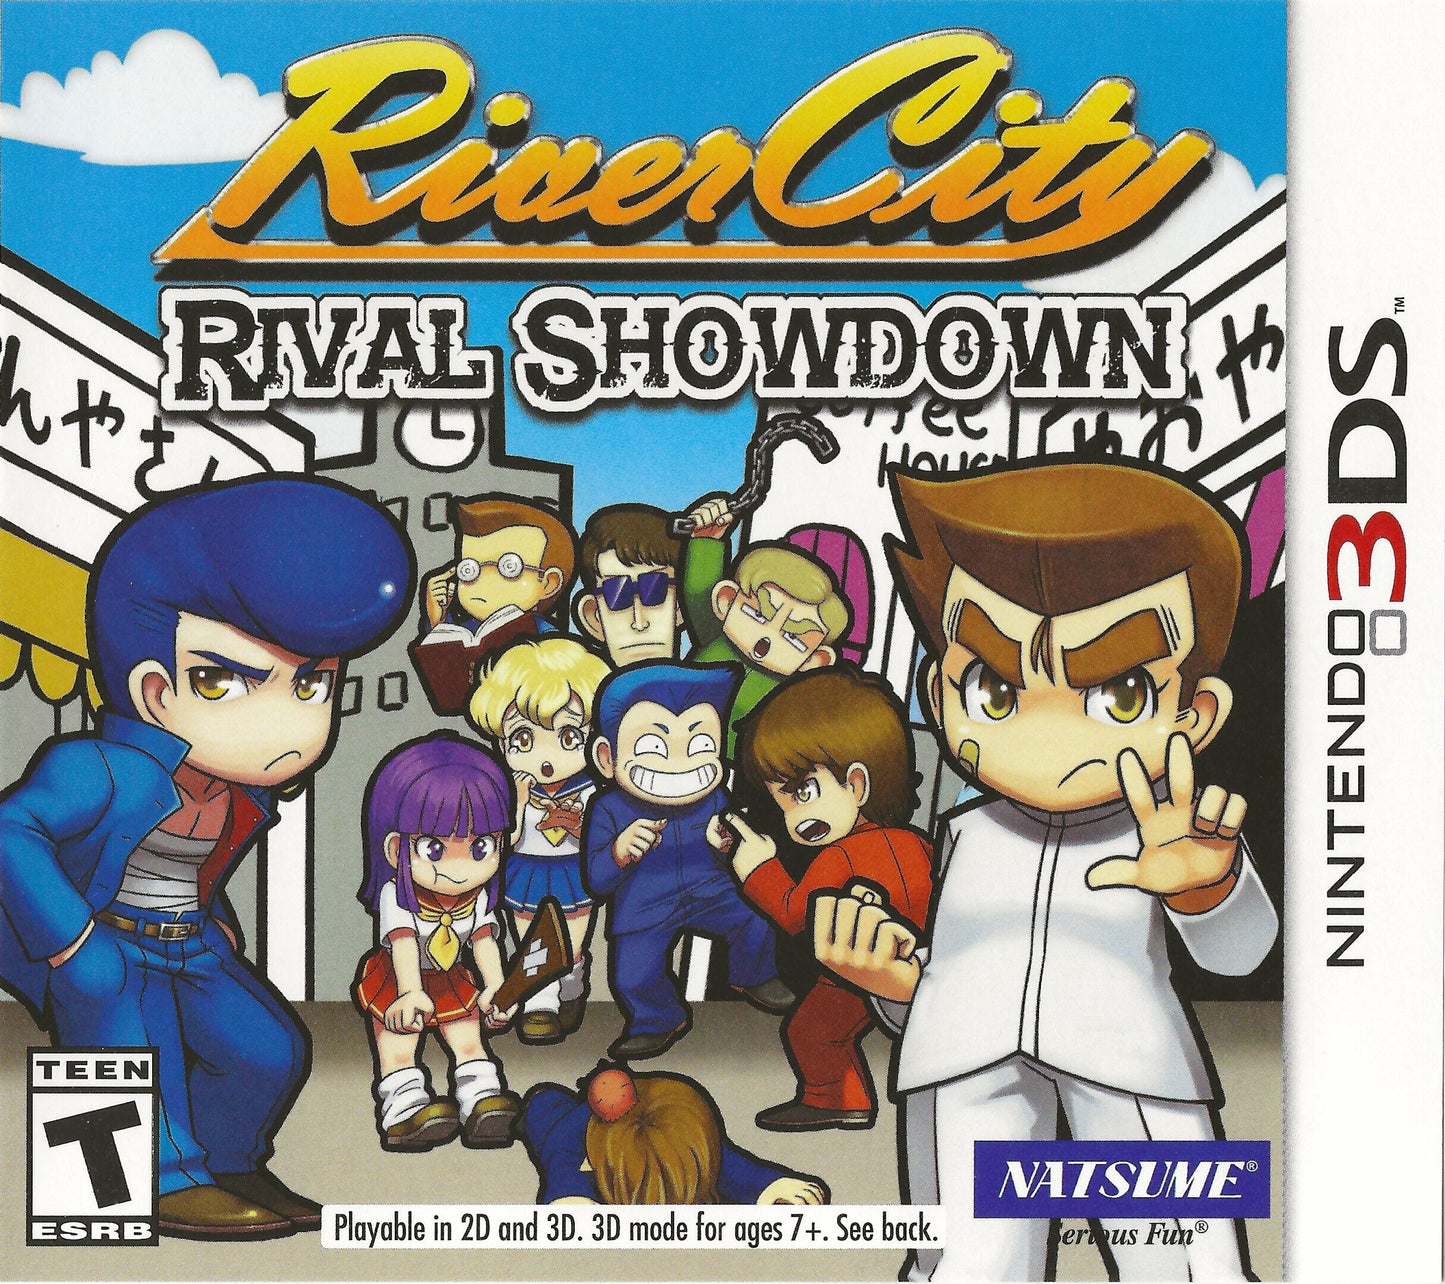 River City: Rival Showdown (Nintendo 3DS)